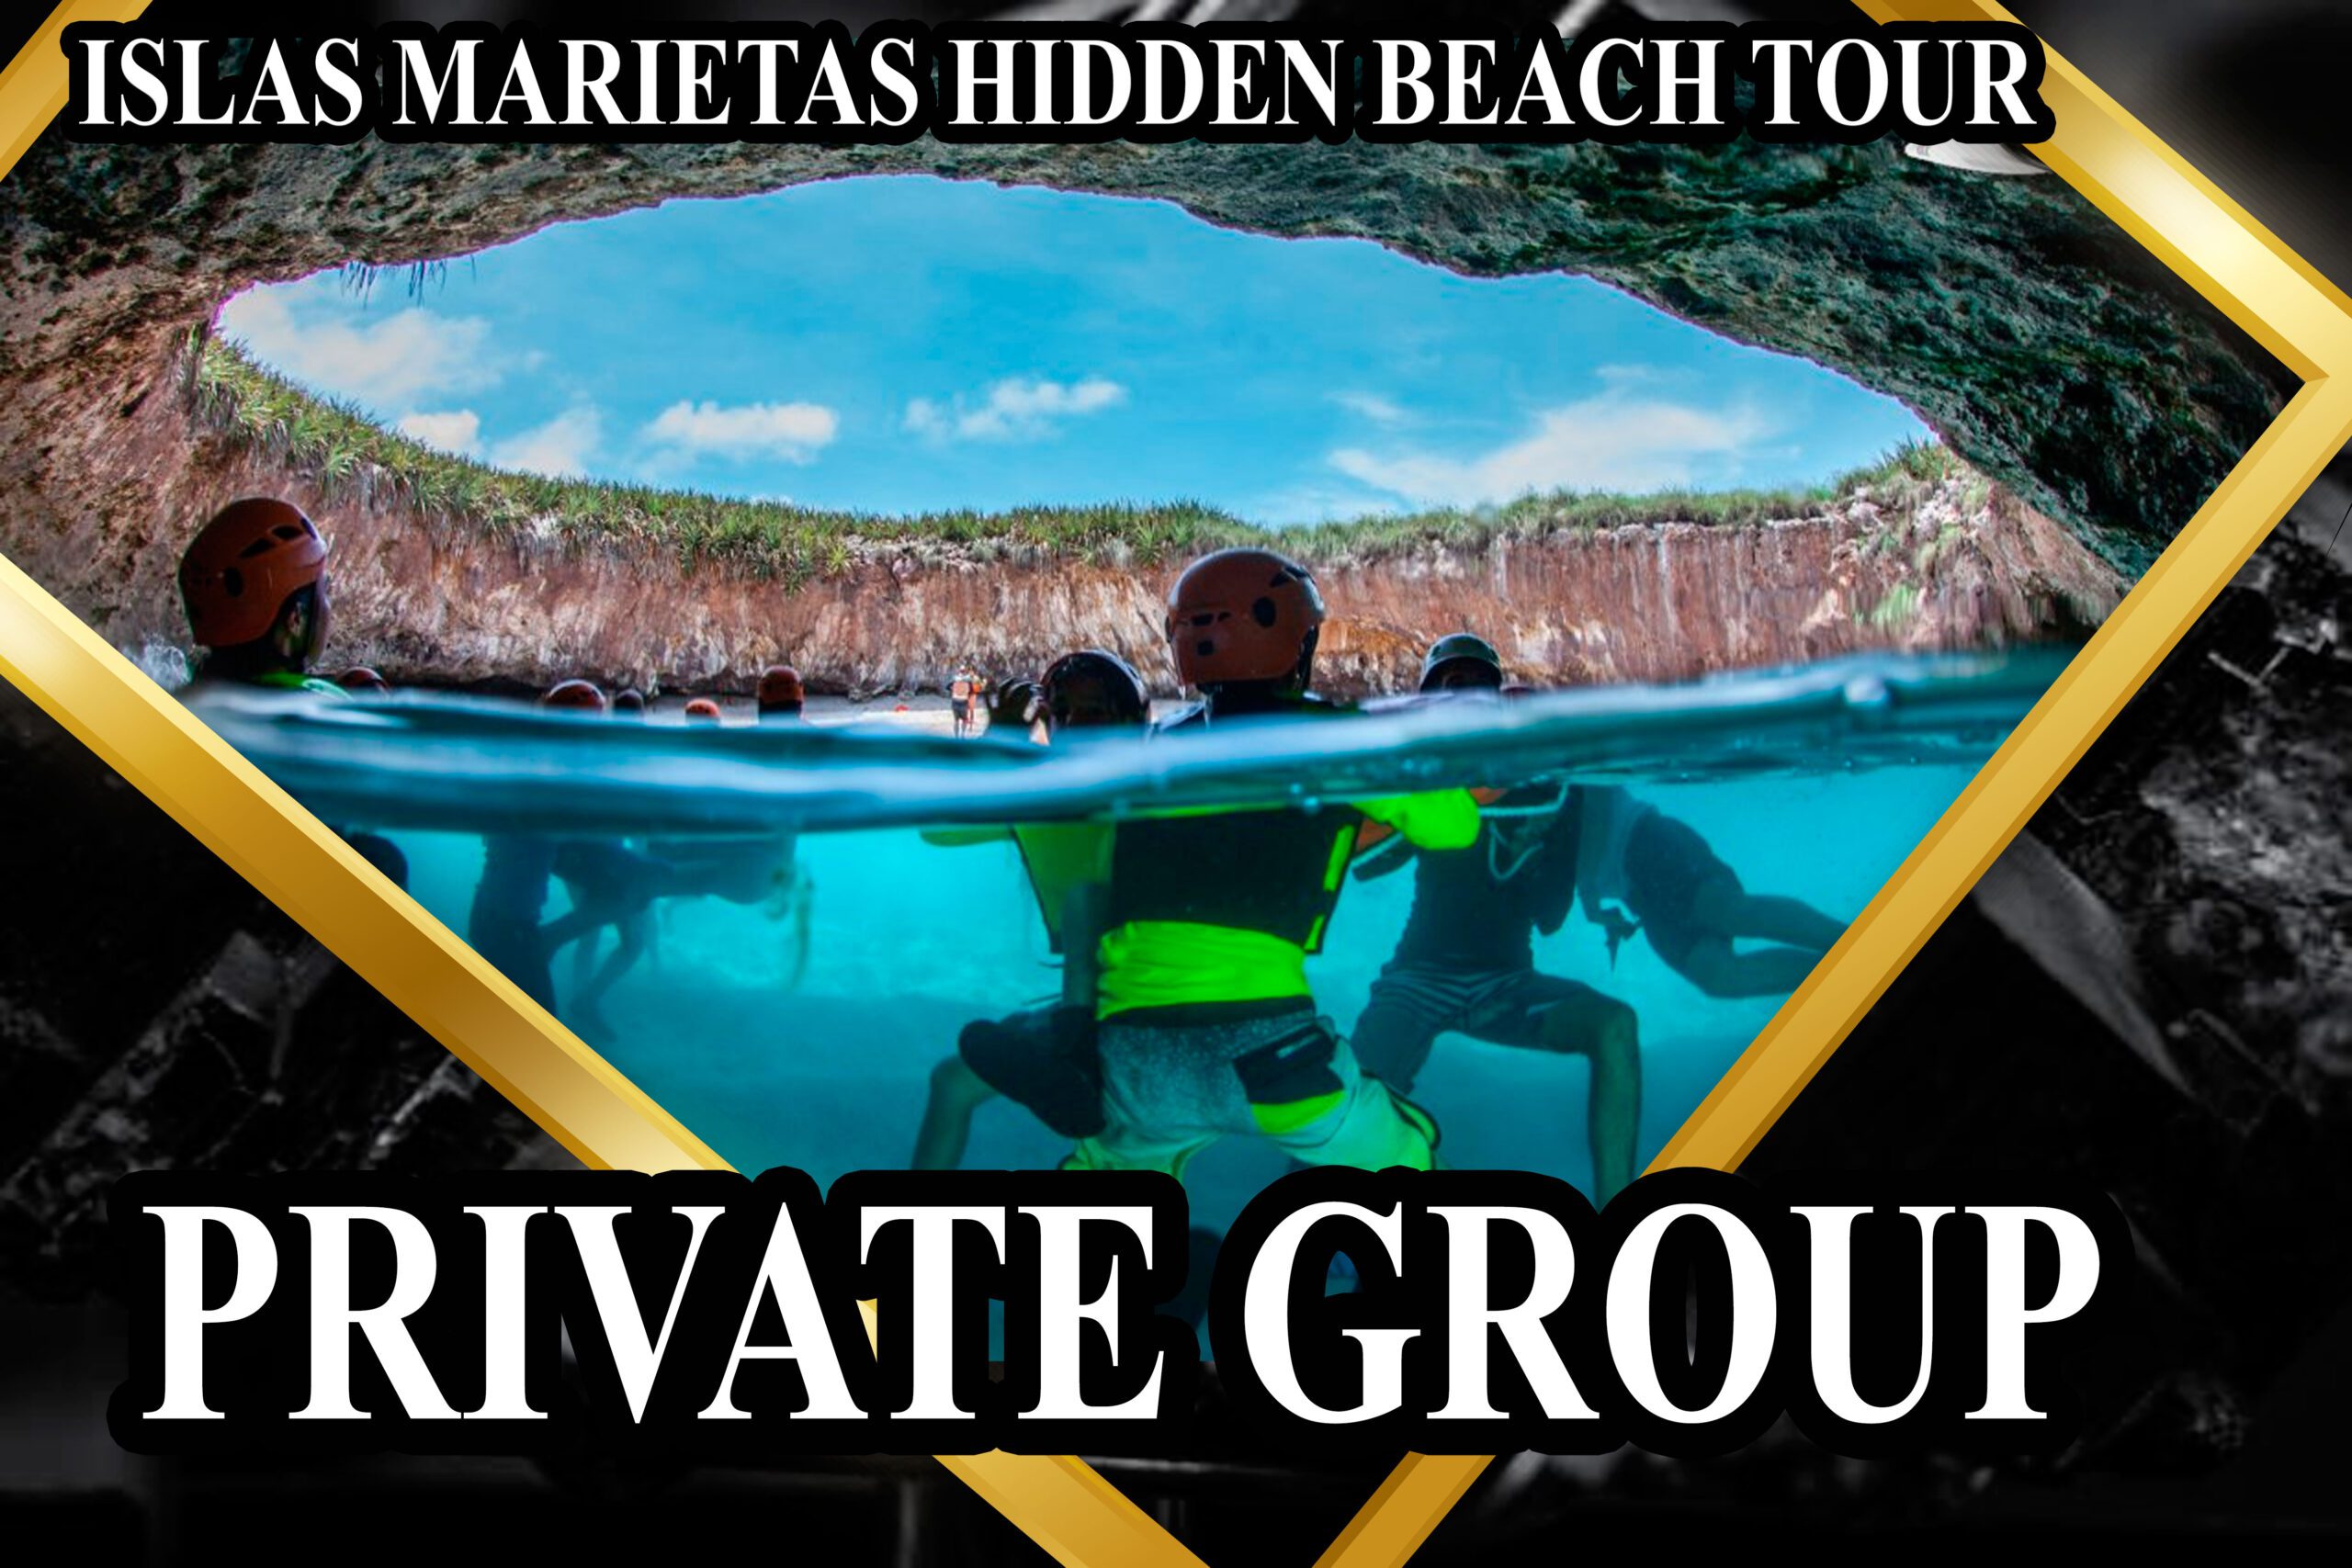 Islas Marietas Tour - Private Group 2 People